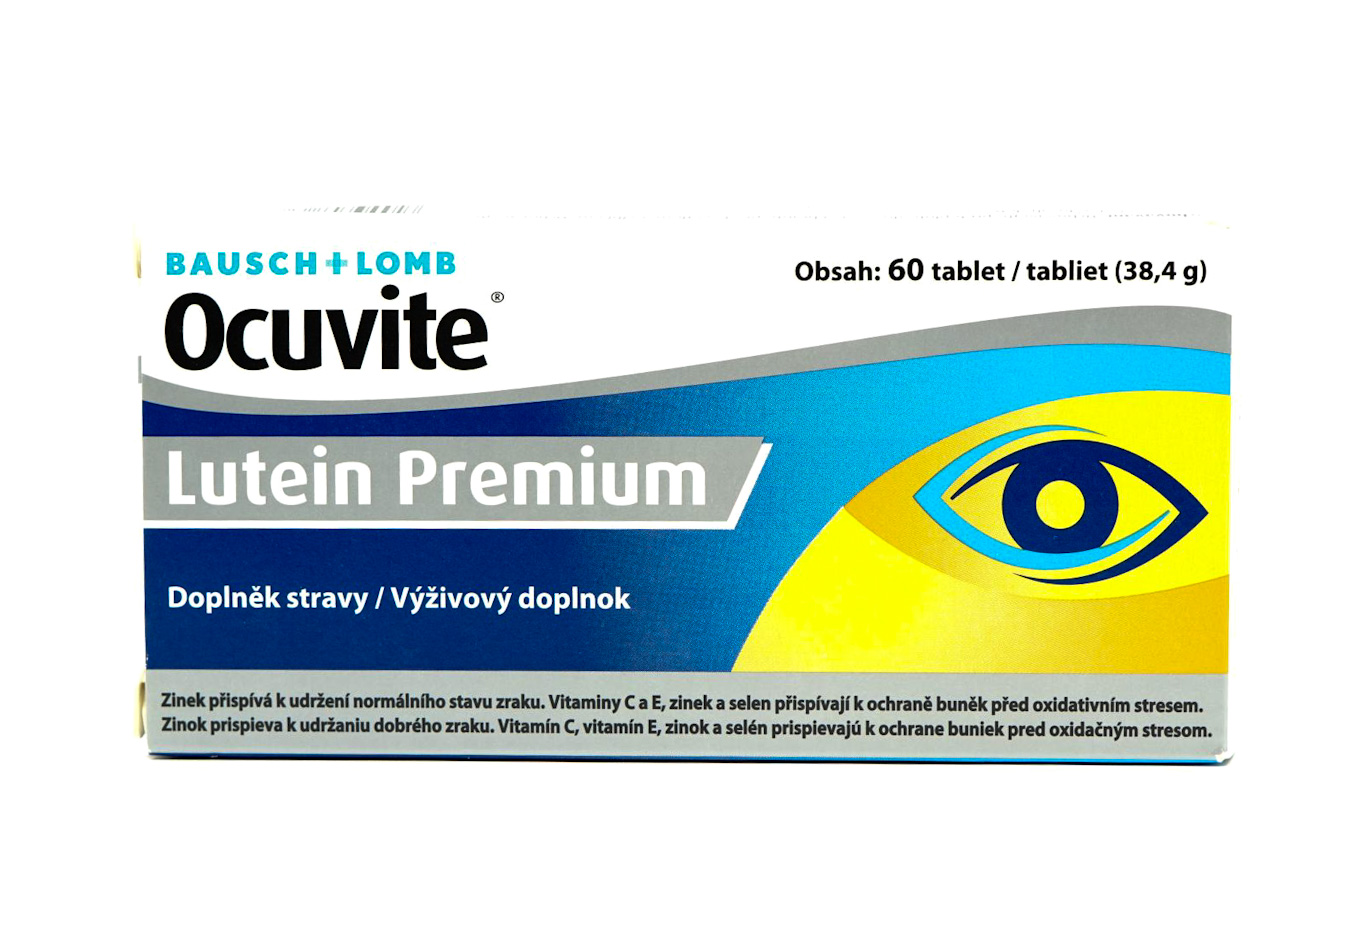 Ocuvite Lutein Premium 60 tbl (Bausch+Lomb) - dočasně nedostupné